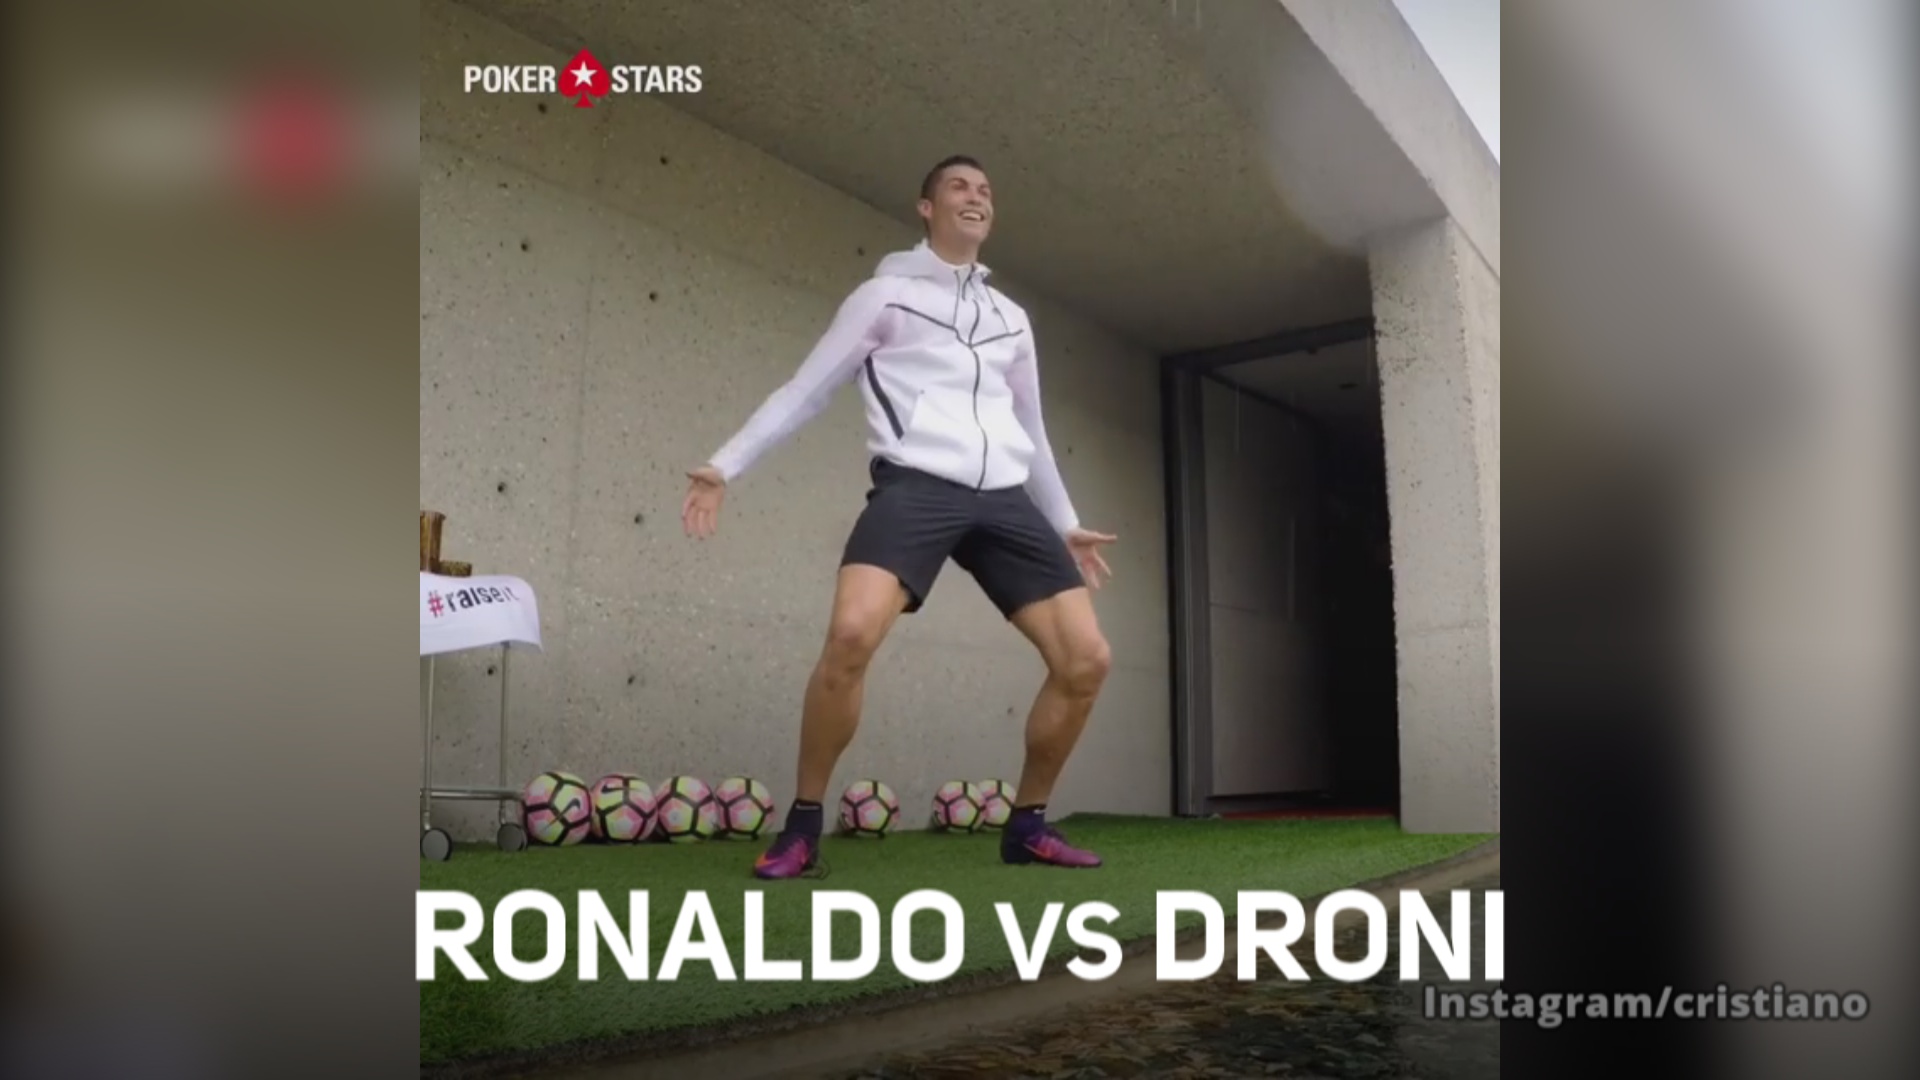 Ronaldo vs droni: la sfida e' accettata